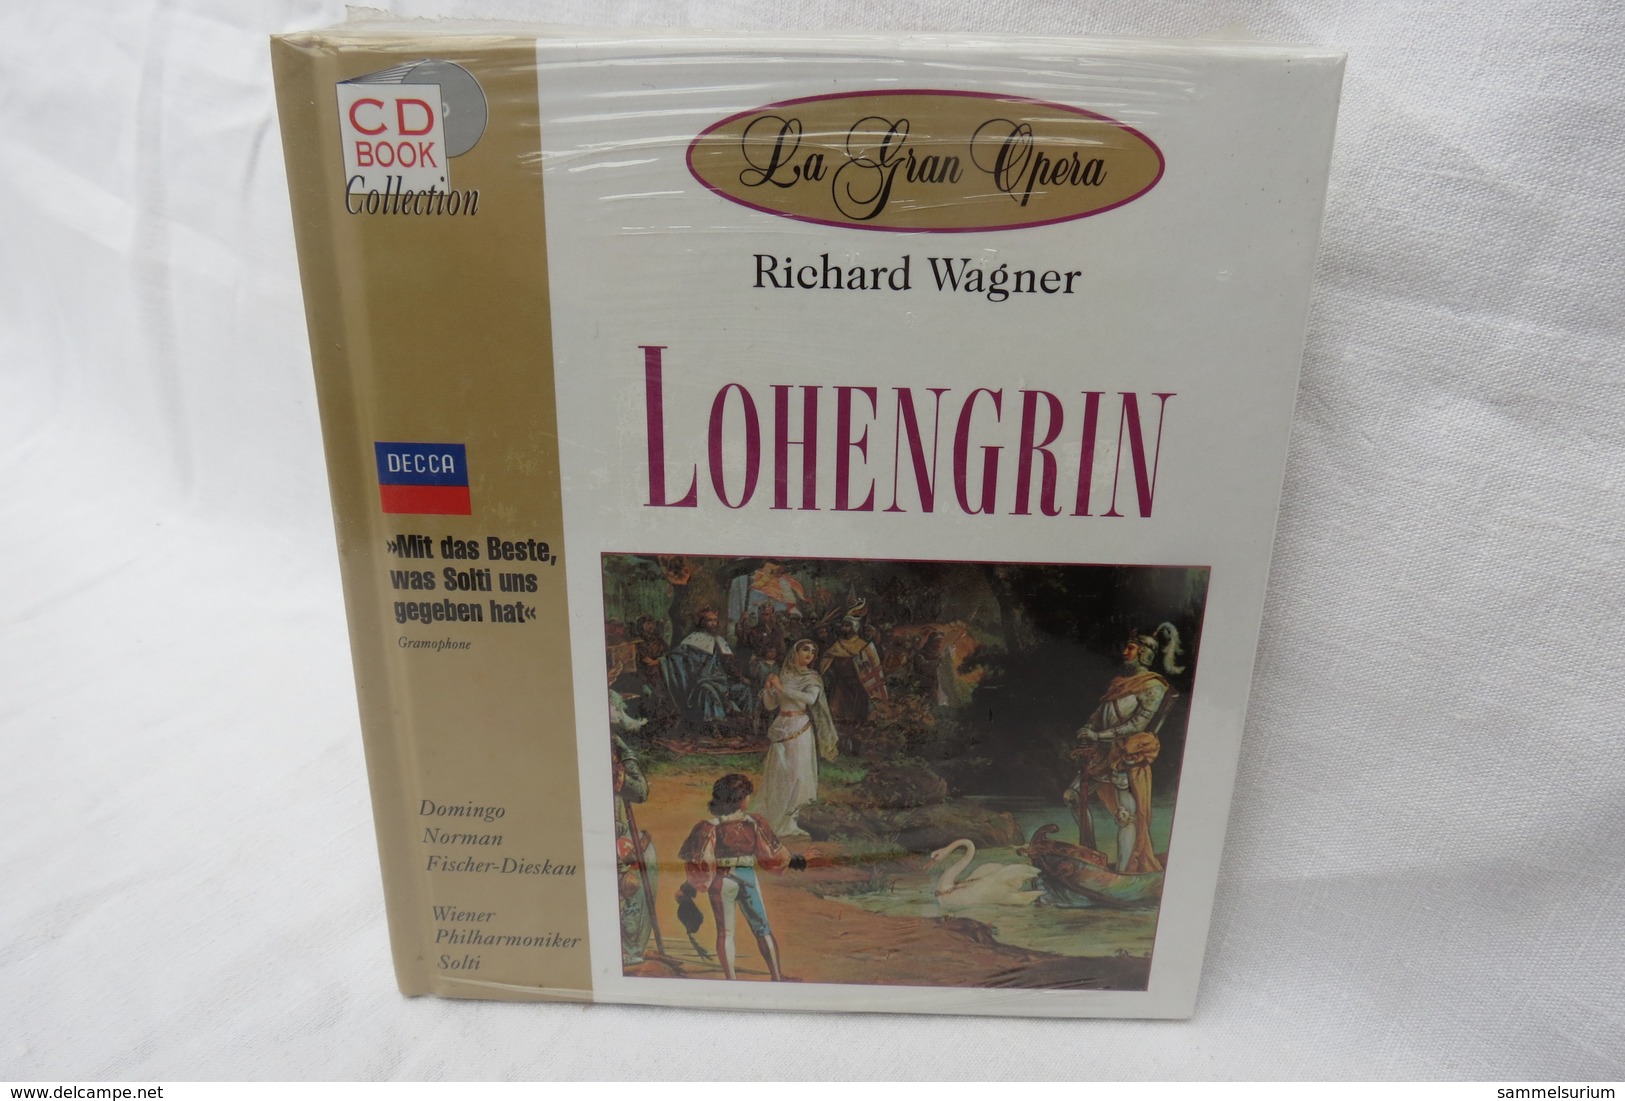 CD "Lohengrin / Richard Wagner" Mit Buch Aus Der CD Book Collection (ungeöffnet, Original Eingeschweißt) - Opera / Operette